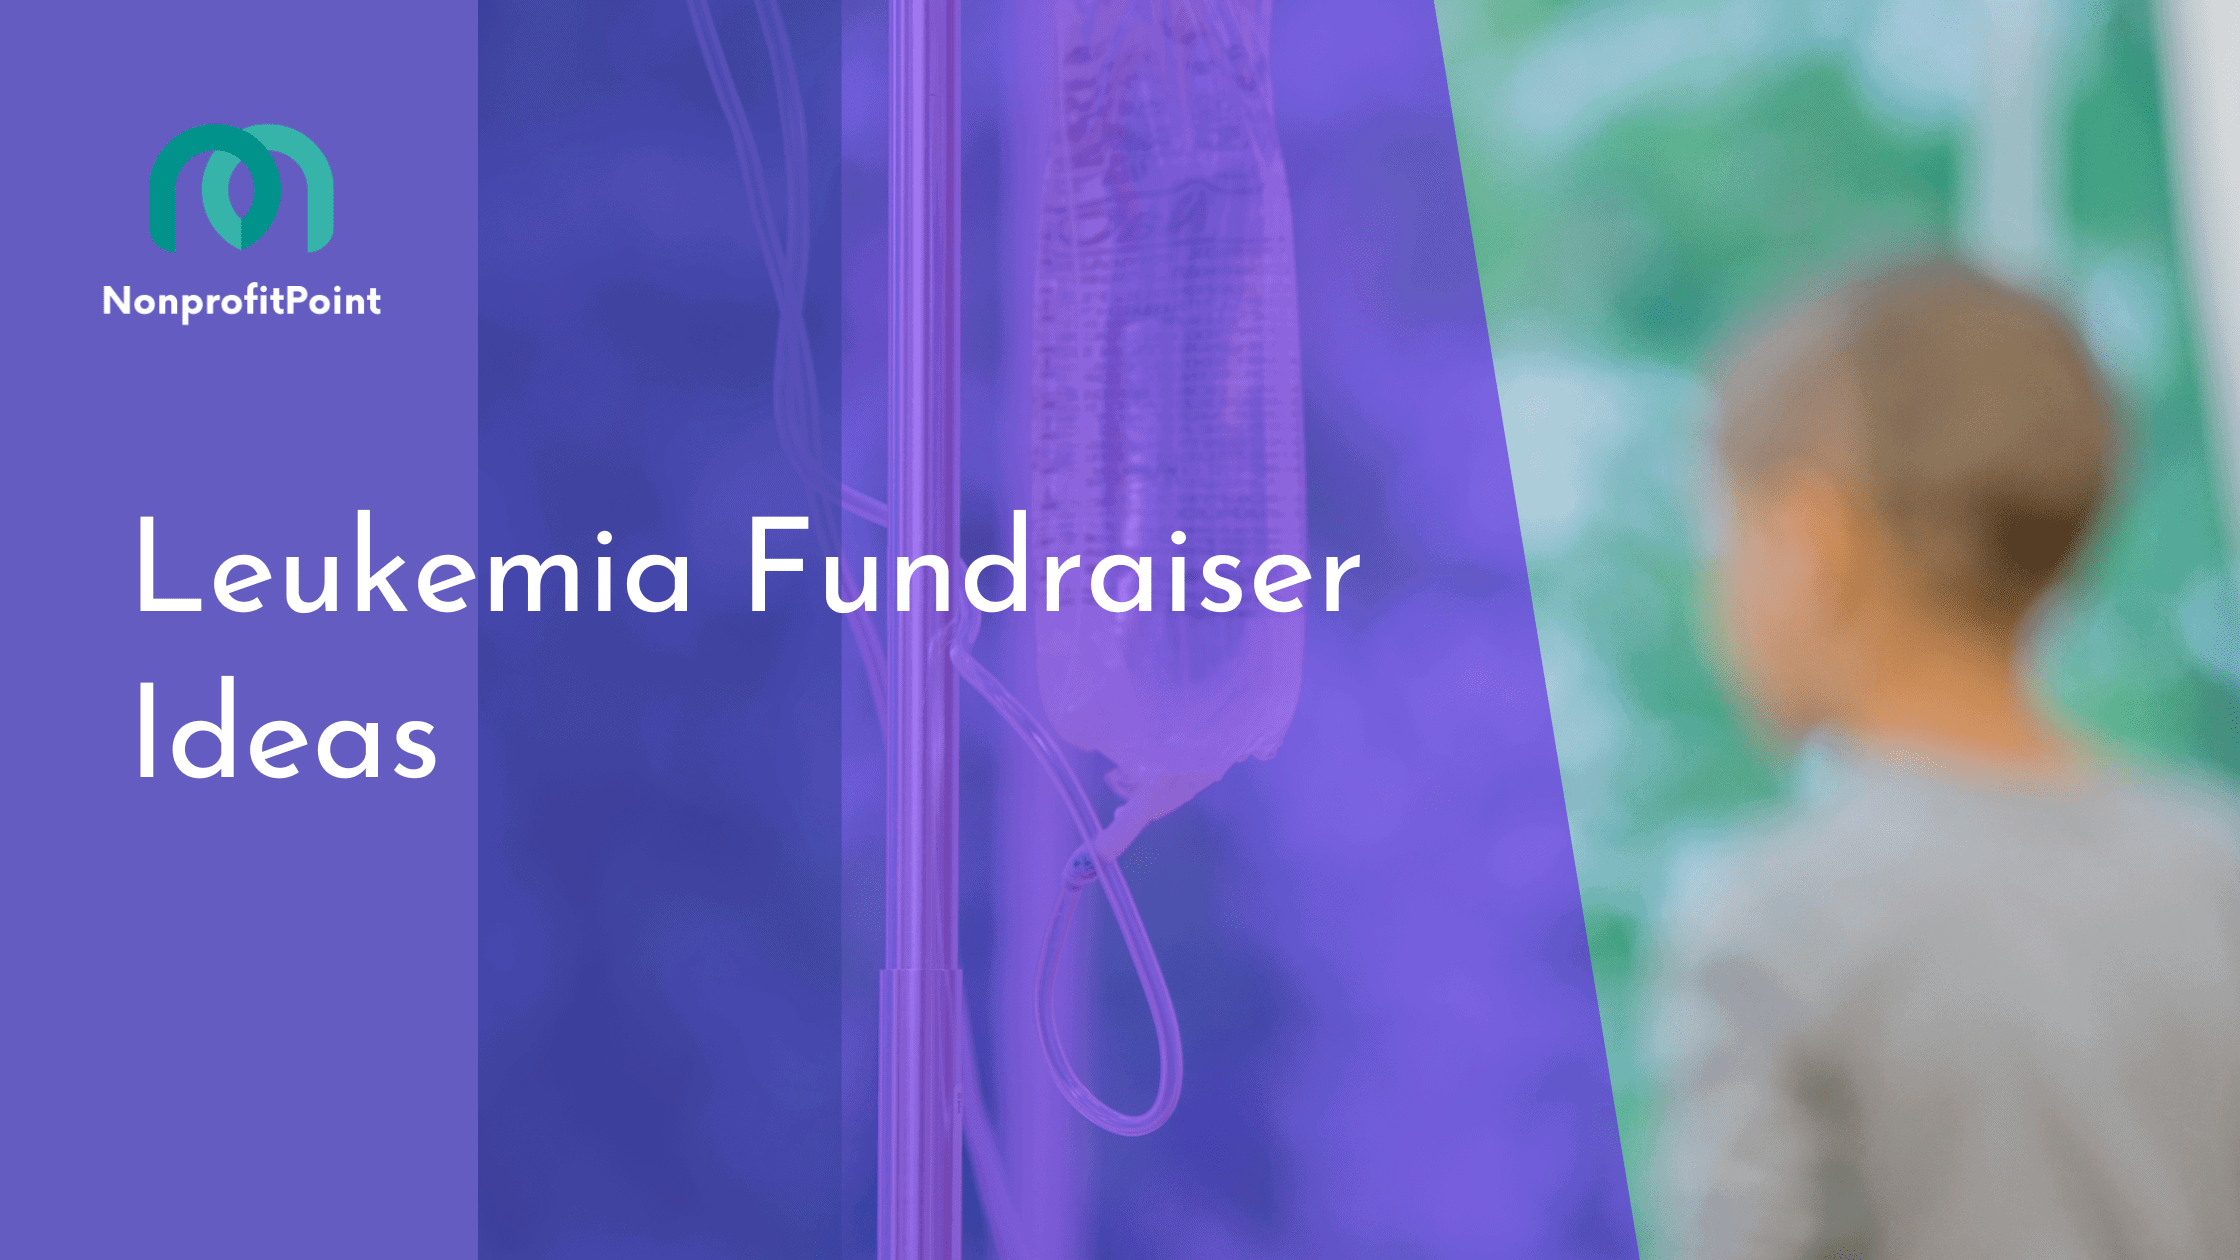 Leukemia Fundraiser Ideas